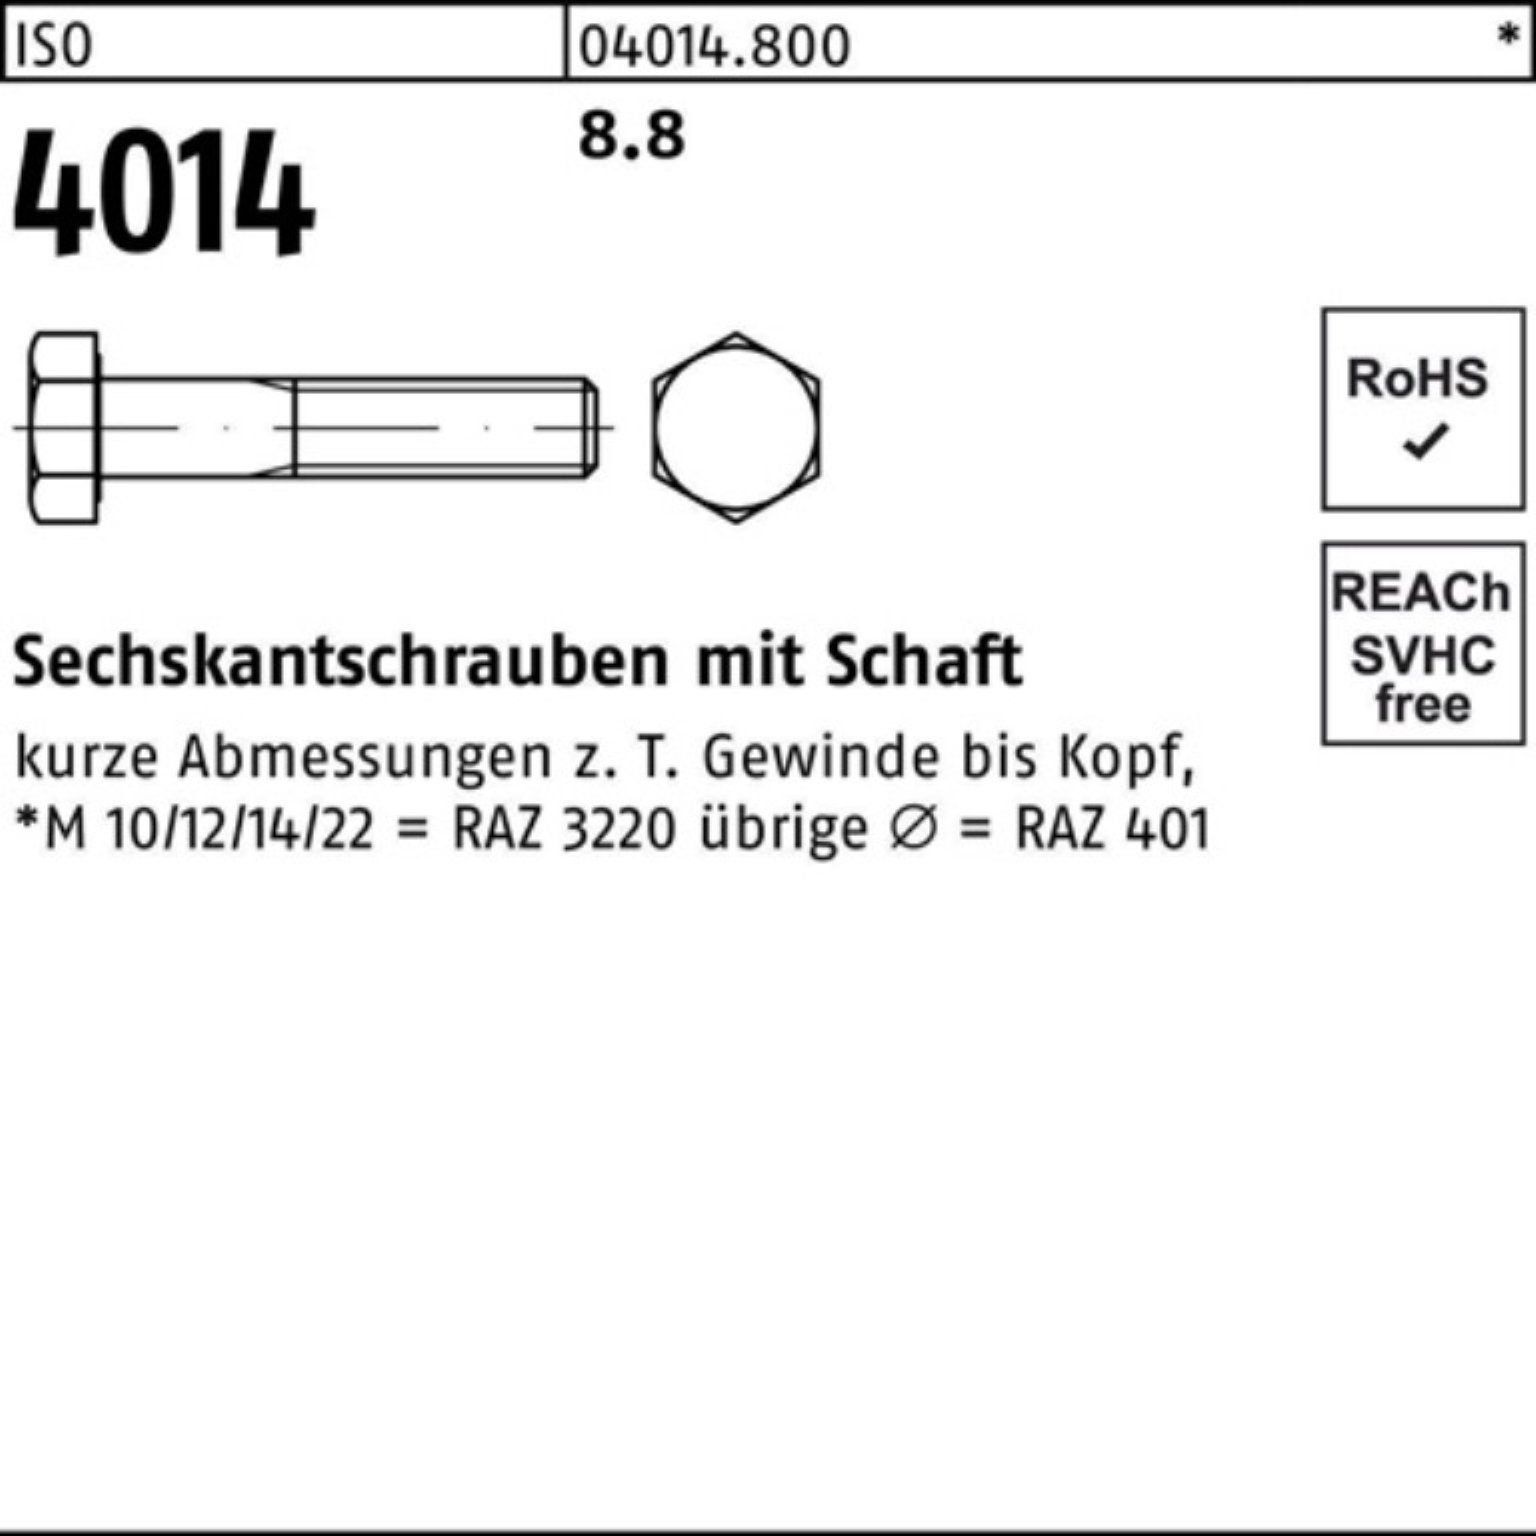 Bufab Sechskantschraube 8.8 M10x 130 Sechskantschraube 100er Stück 4014 ISO Schaft Pack IS 50